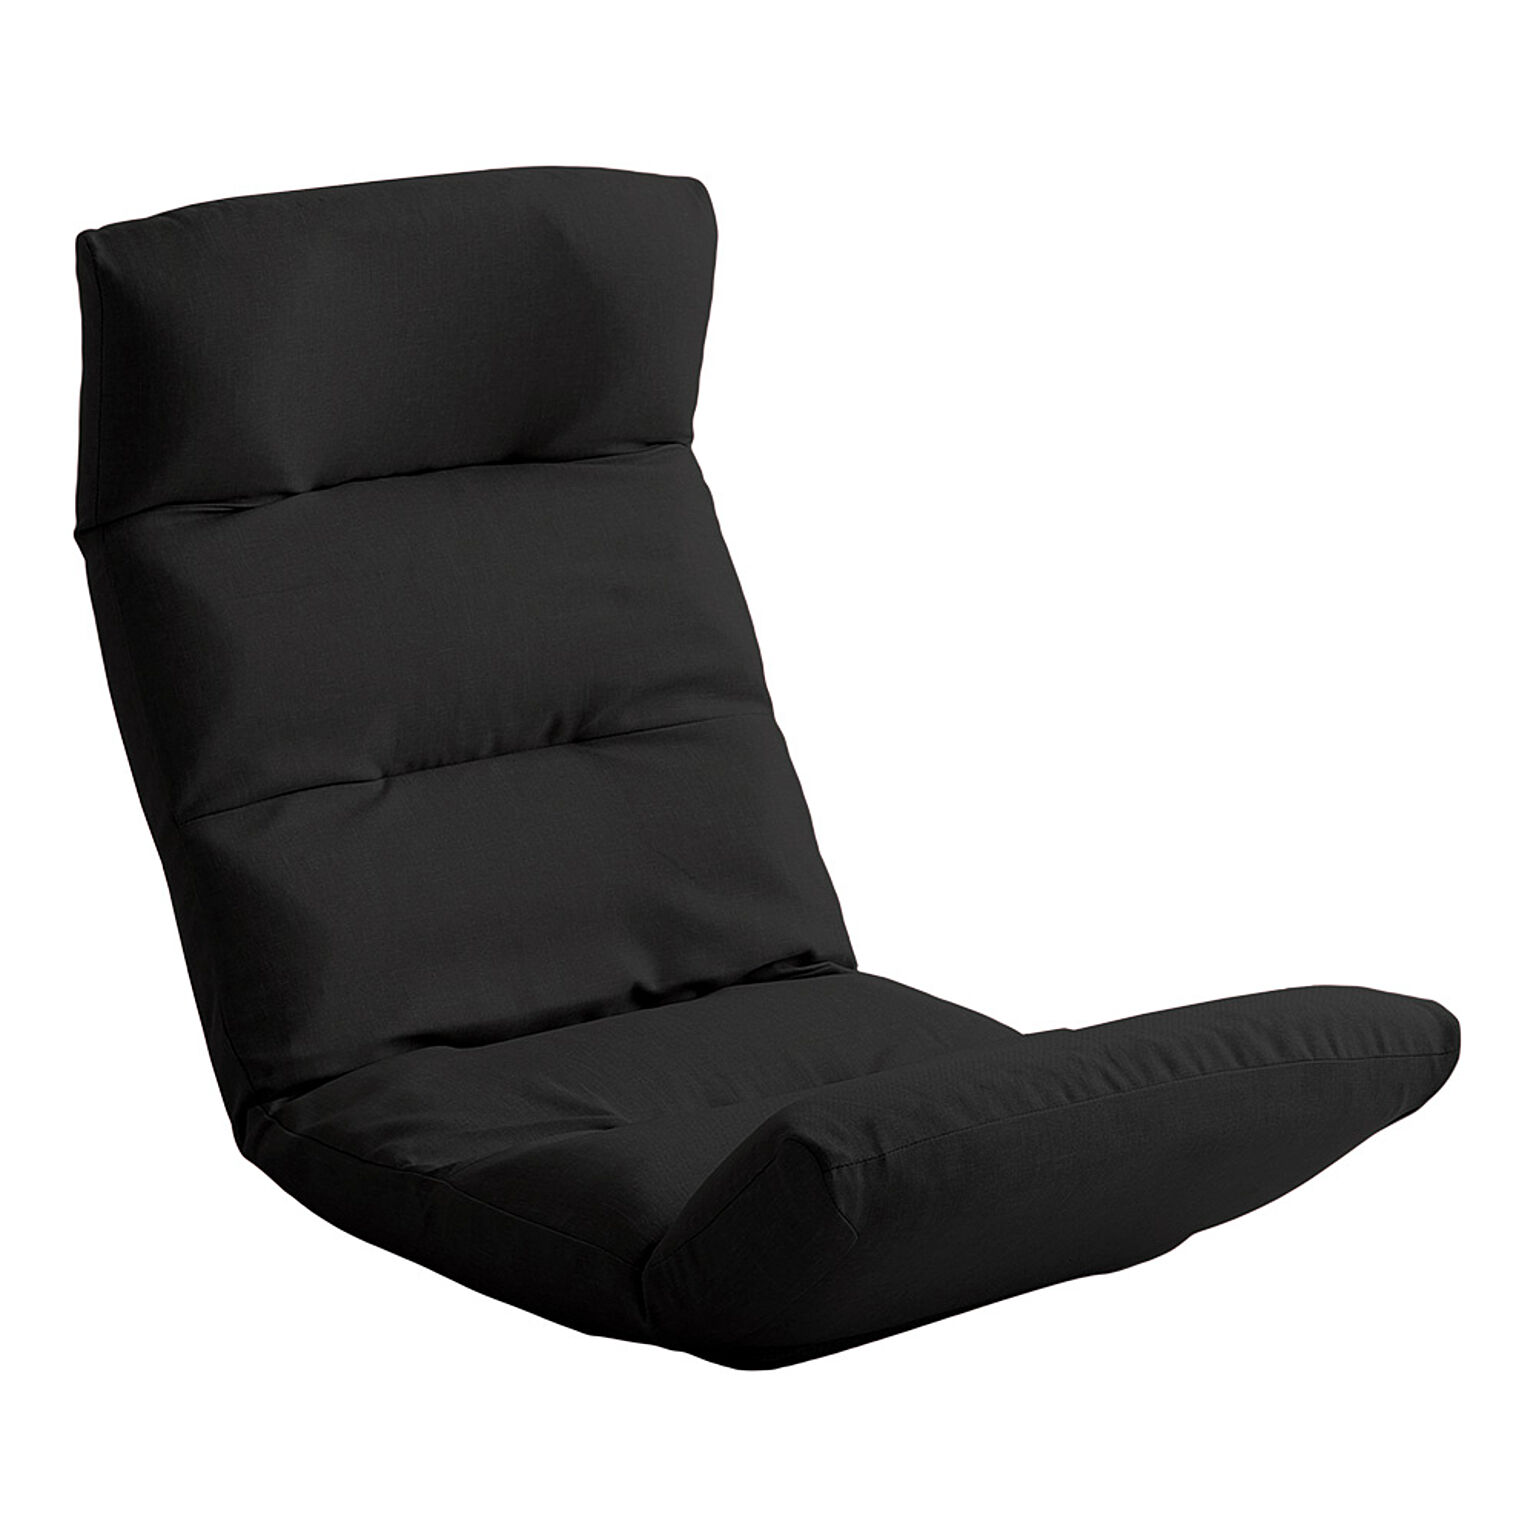 ホームテイスト リクライニング座椅子 Moln-モルン- Up type ブラック